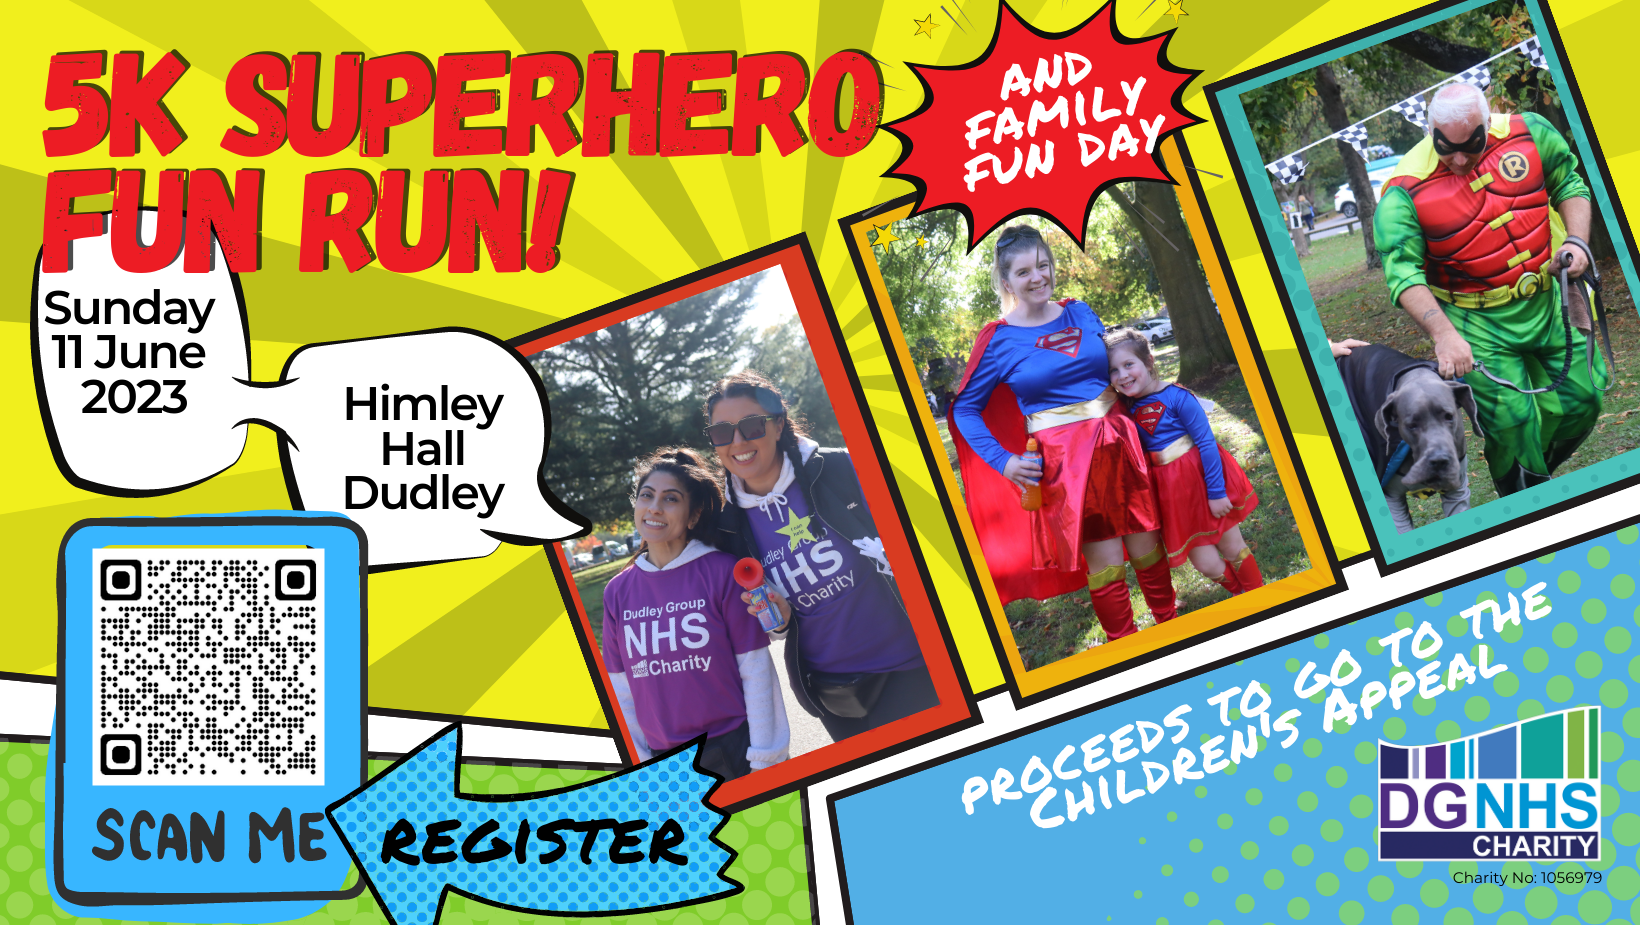 Superhero Fun Run and Family Fun Day!